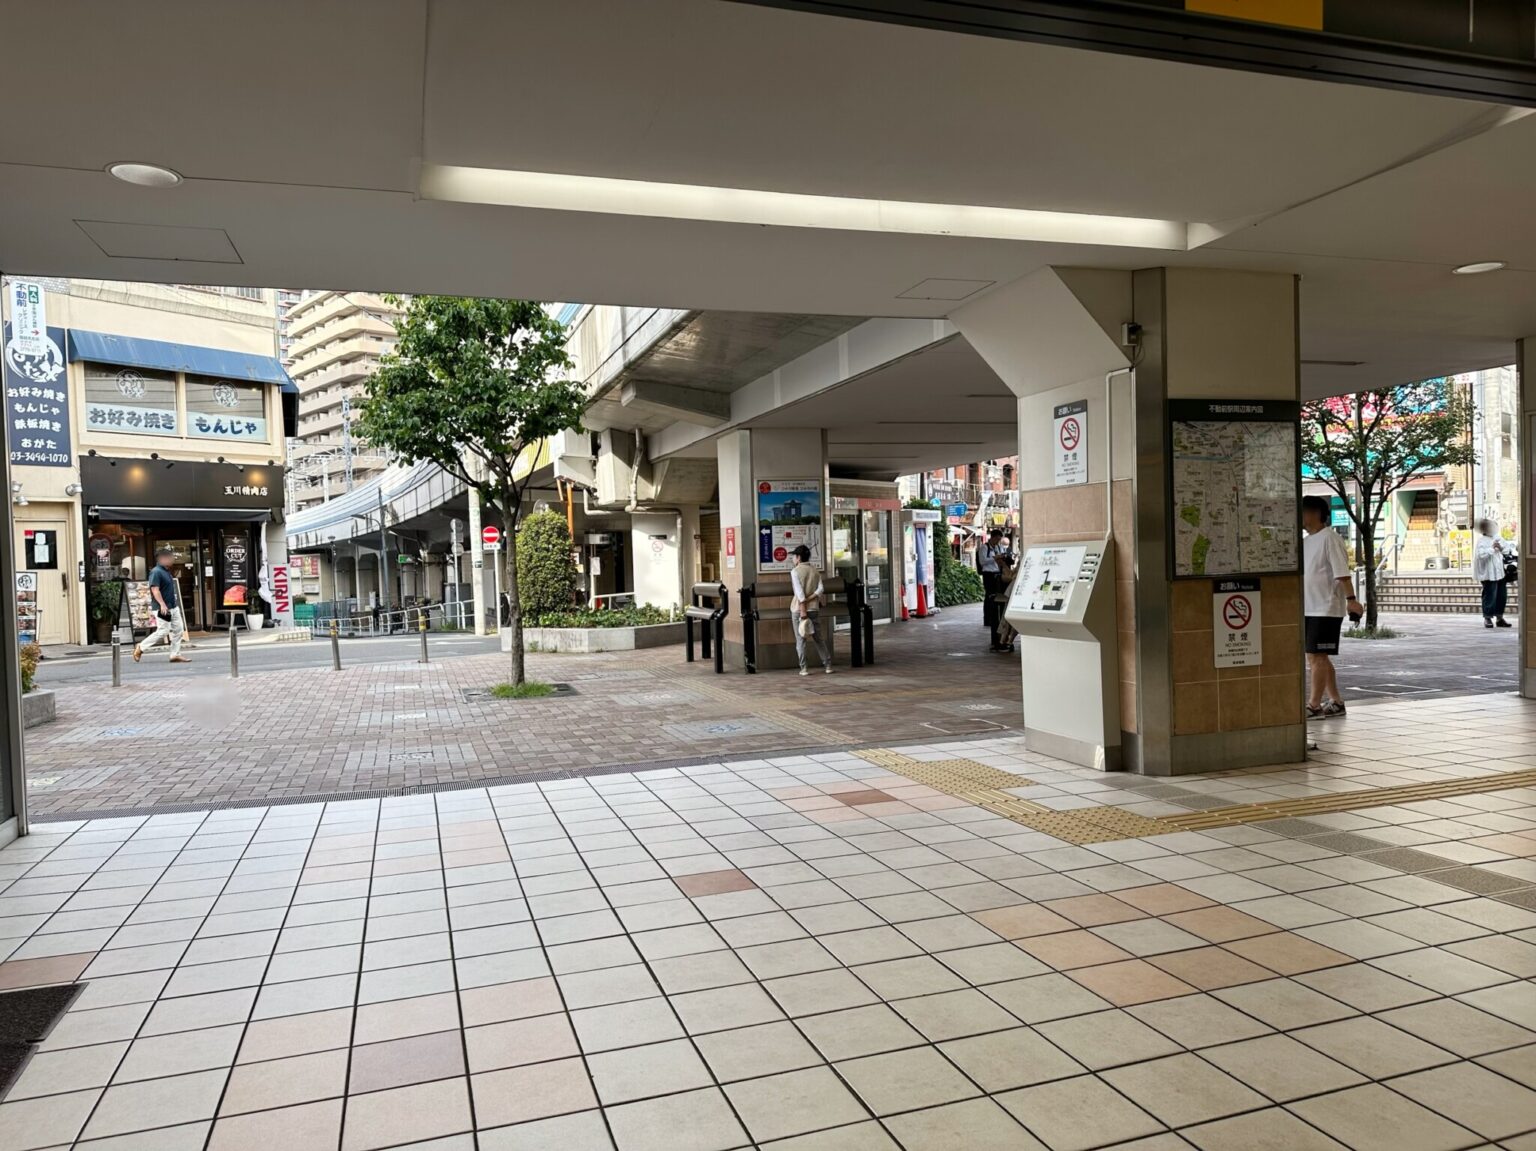 改札の先には左右に商店街が広がっています。